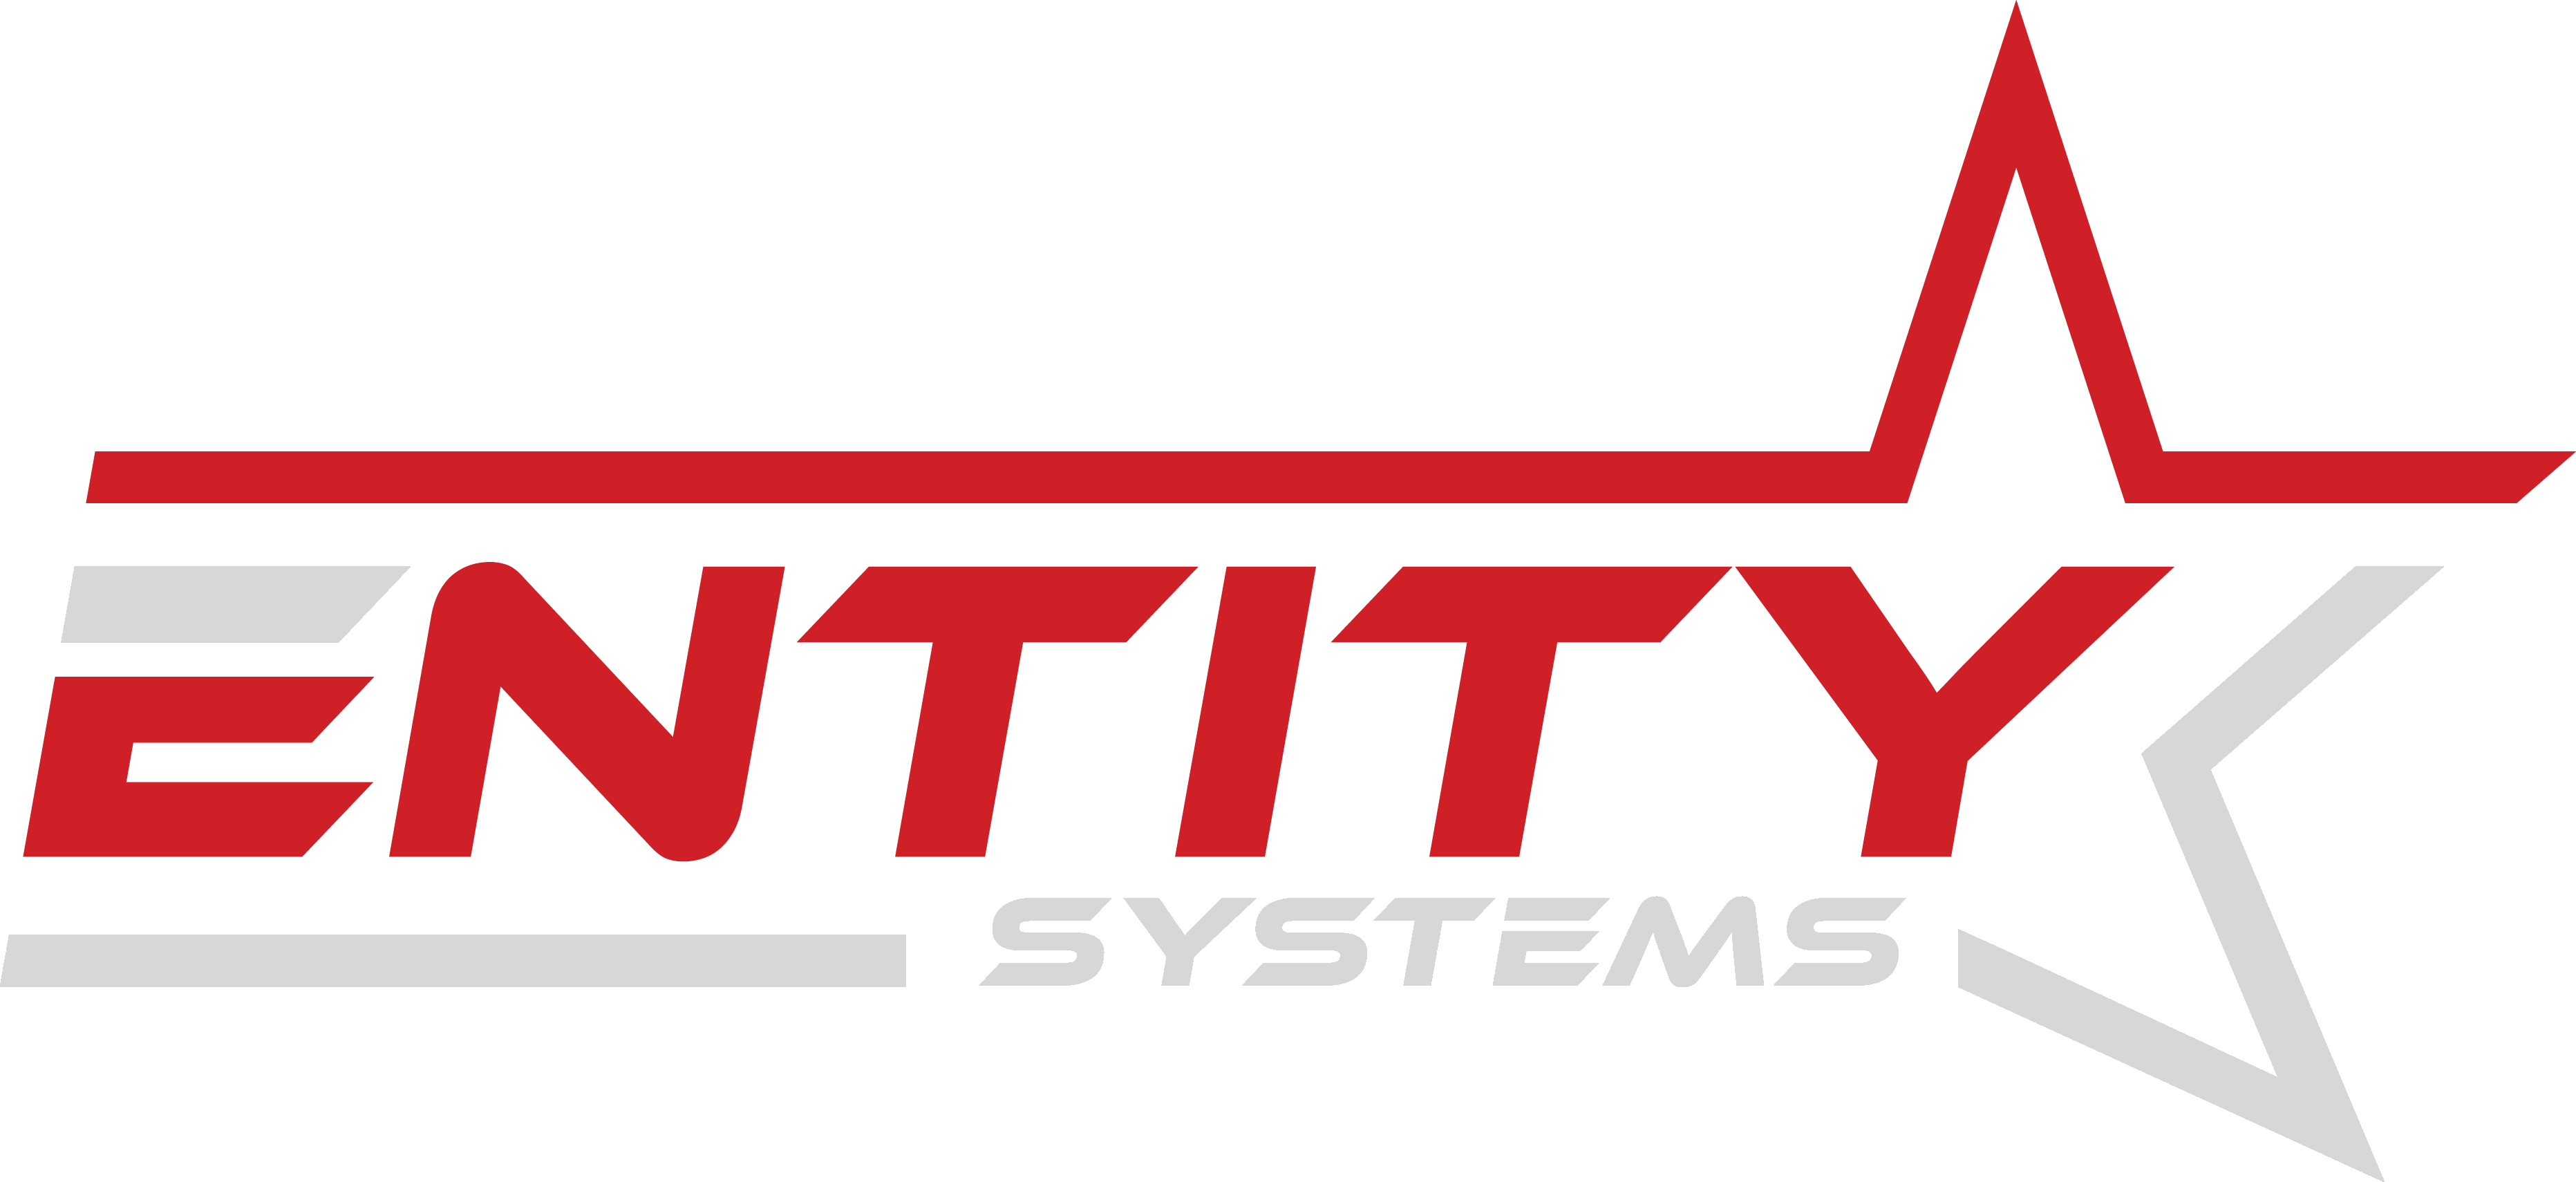 Entity Systems Logo